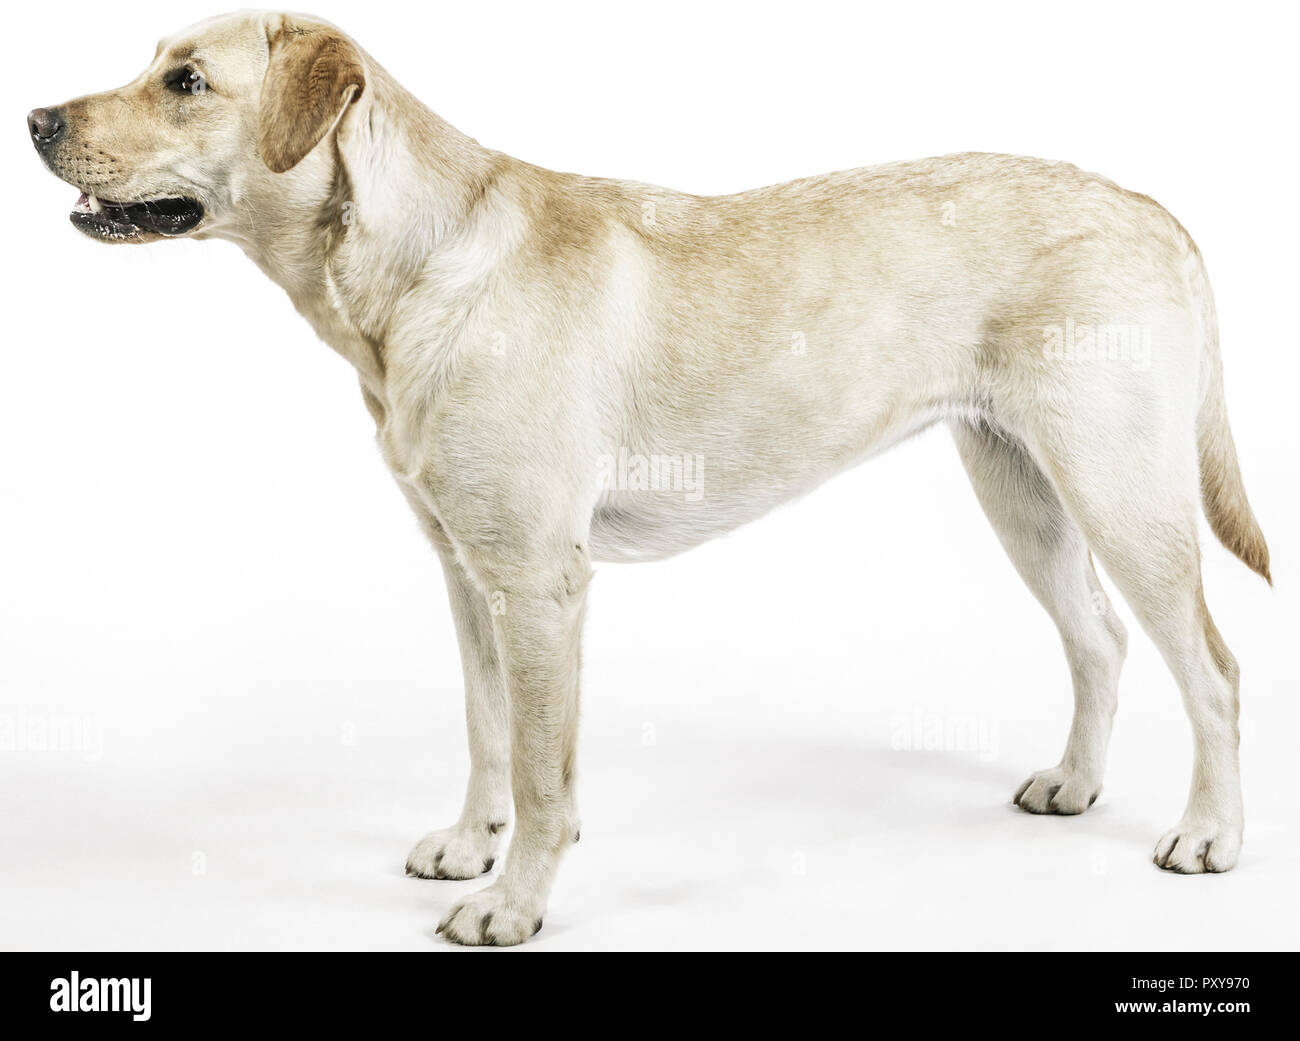 Hund, Labrador Retriever, stehend Stock Photo